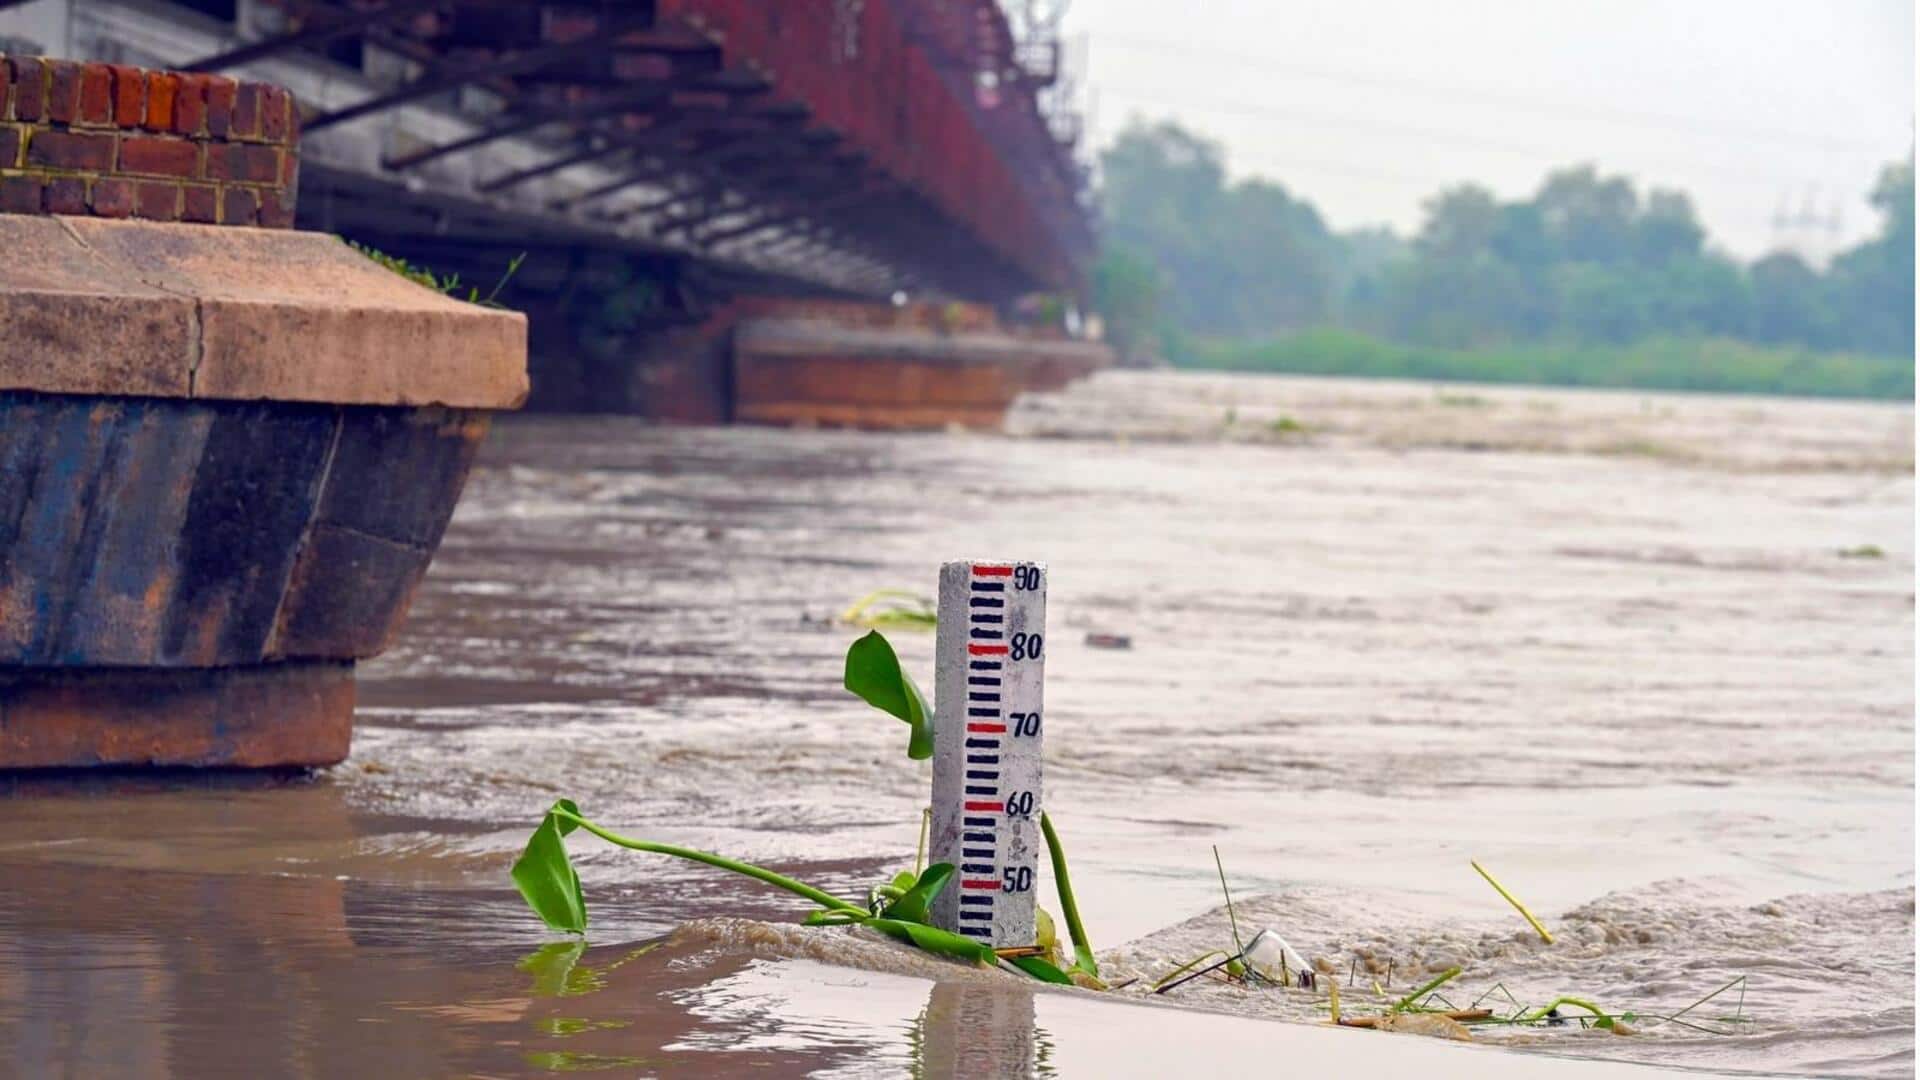 Delhi: దిల్లీలో యమునా నది నీటిమట్టం ఆల్ టైమ్ హై; 45ఏళ్ల రికార్డు బద్దలు; కేజ్రీవాల్ ఆందోళన 